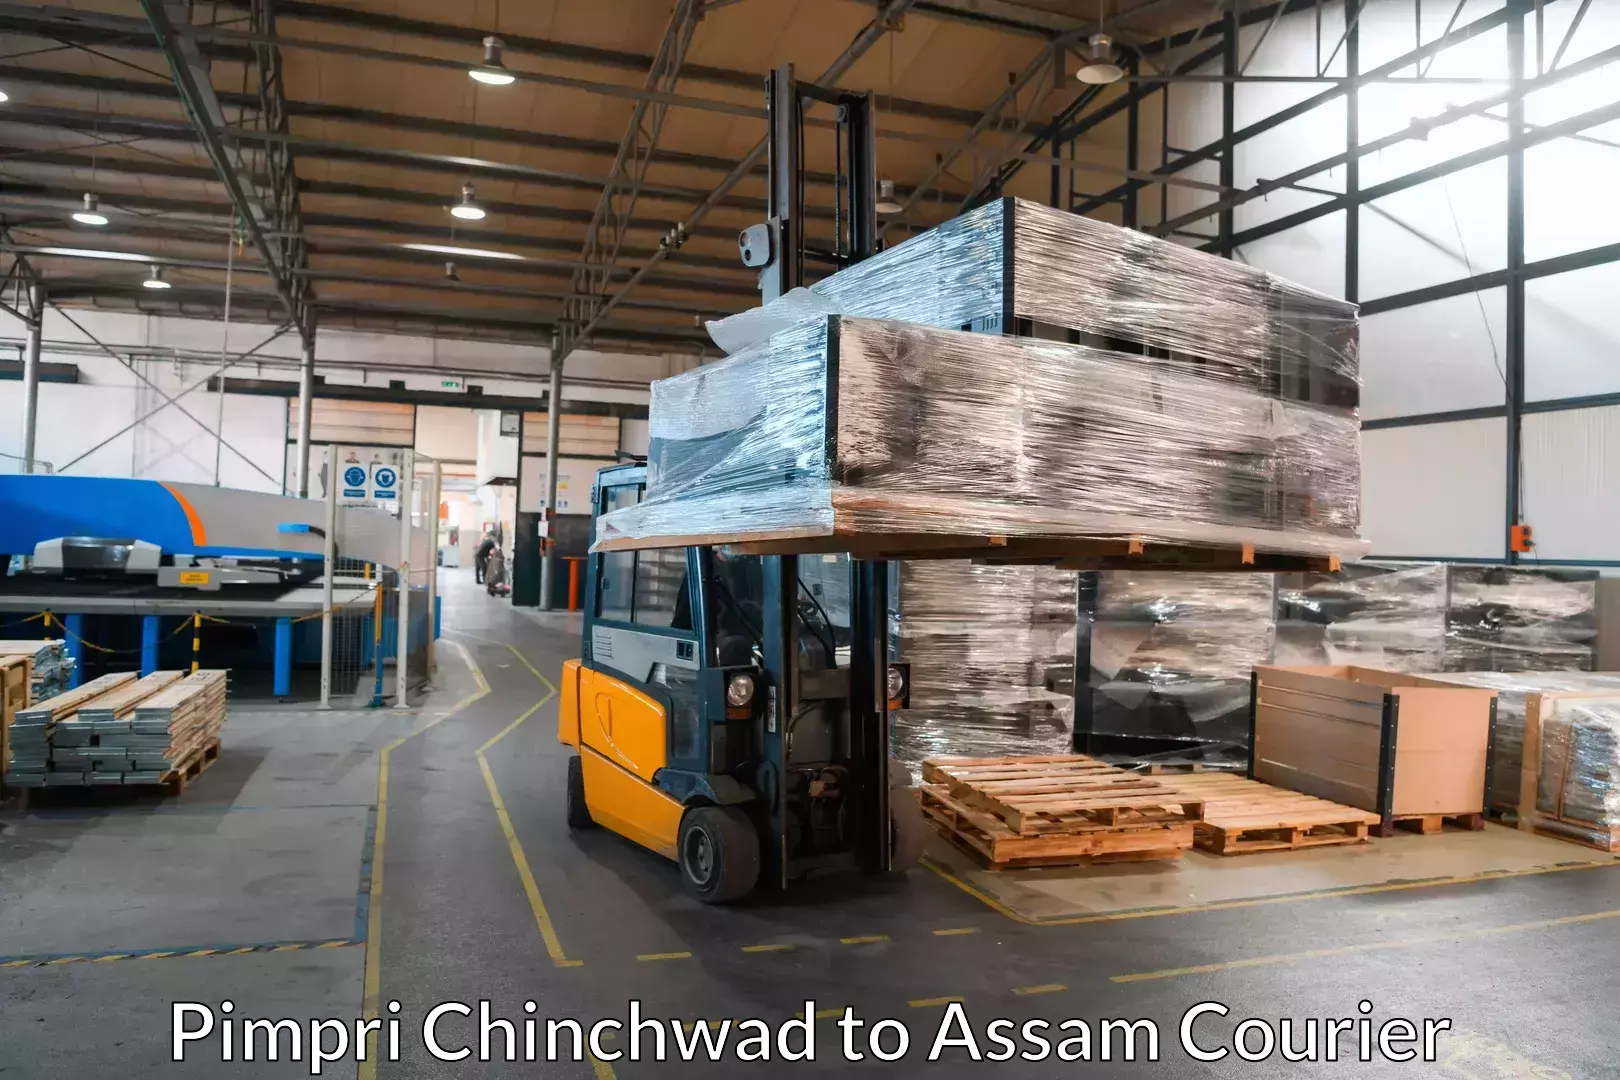 Furniture transport service Pimpri Chinchwad to Assam